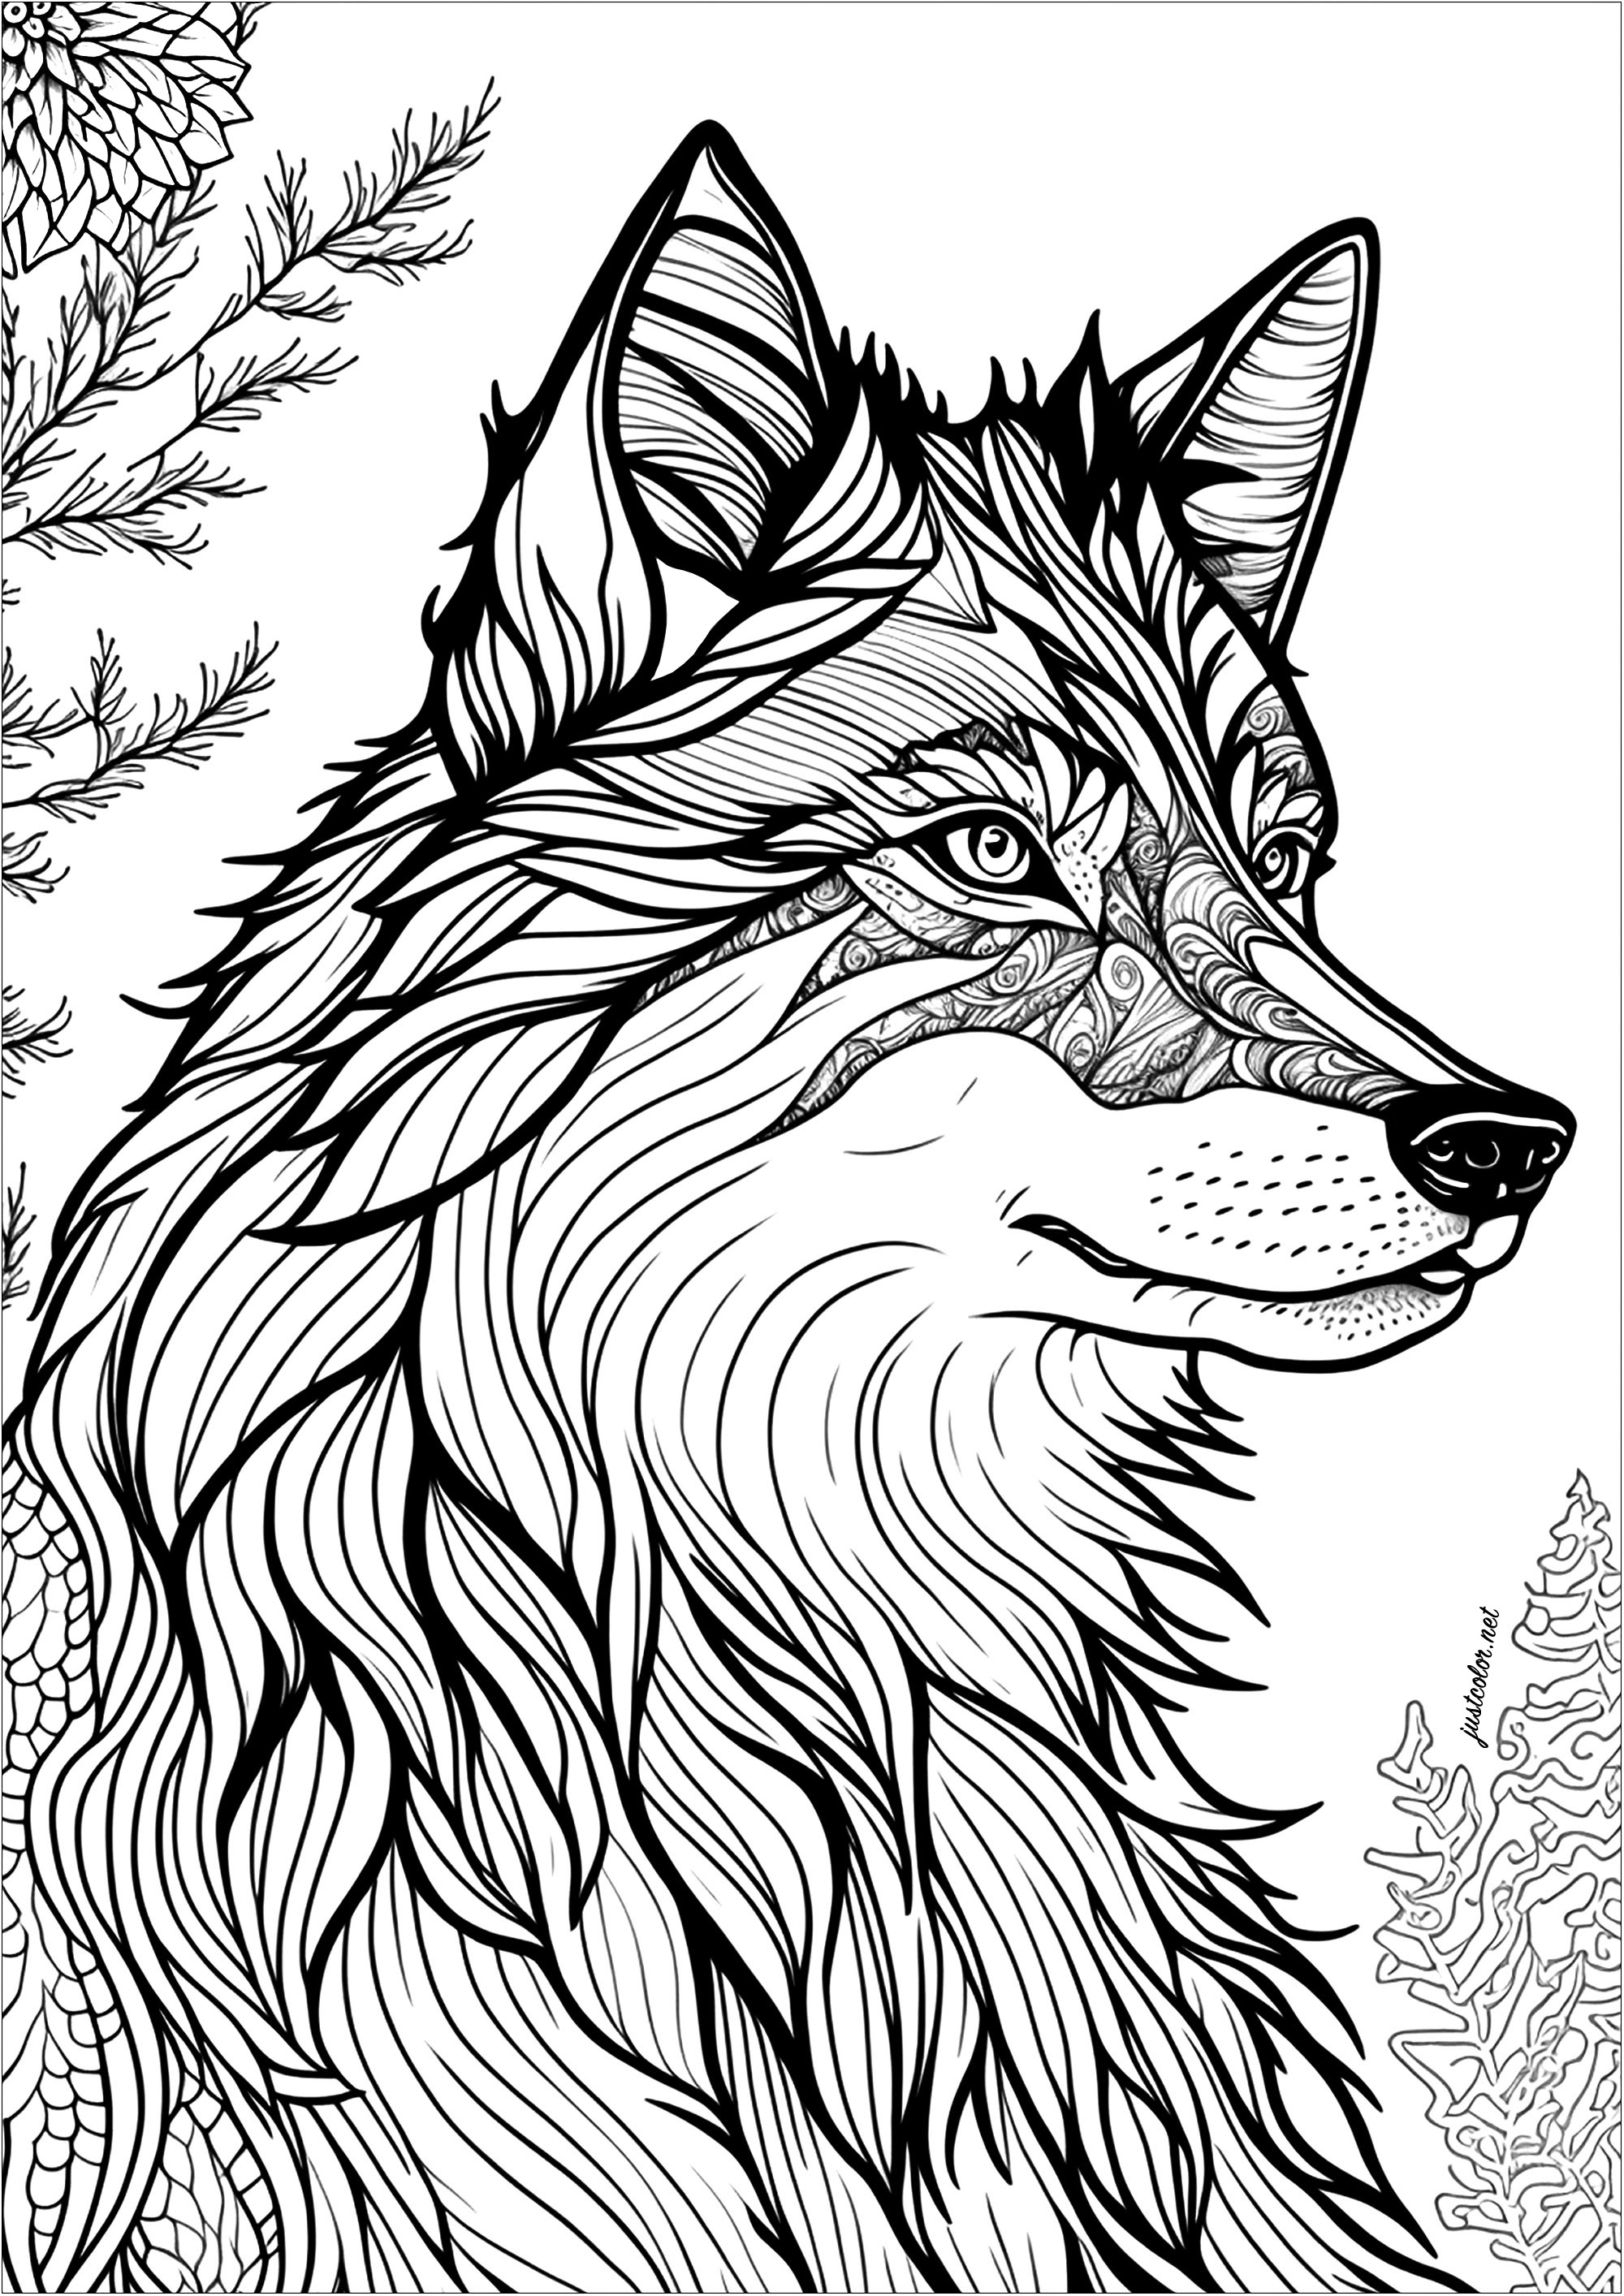 Einfärben eines Wolfs, im Profil gesehen. Die Augen dieses Wolfs sind besonders ausdrucksstark, sein Blick ist fesselnd und geheimnisvoll.